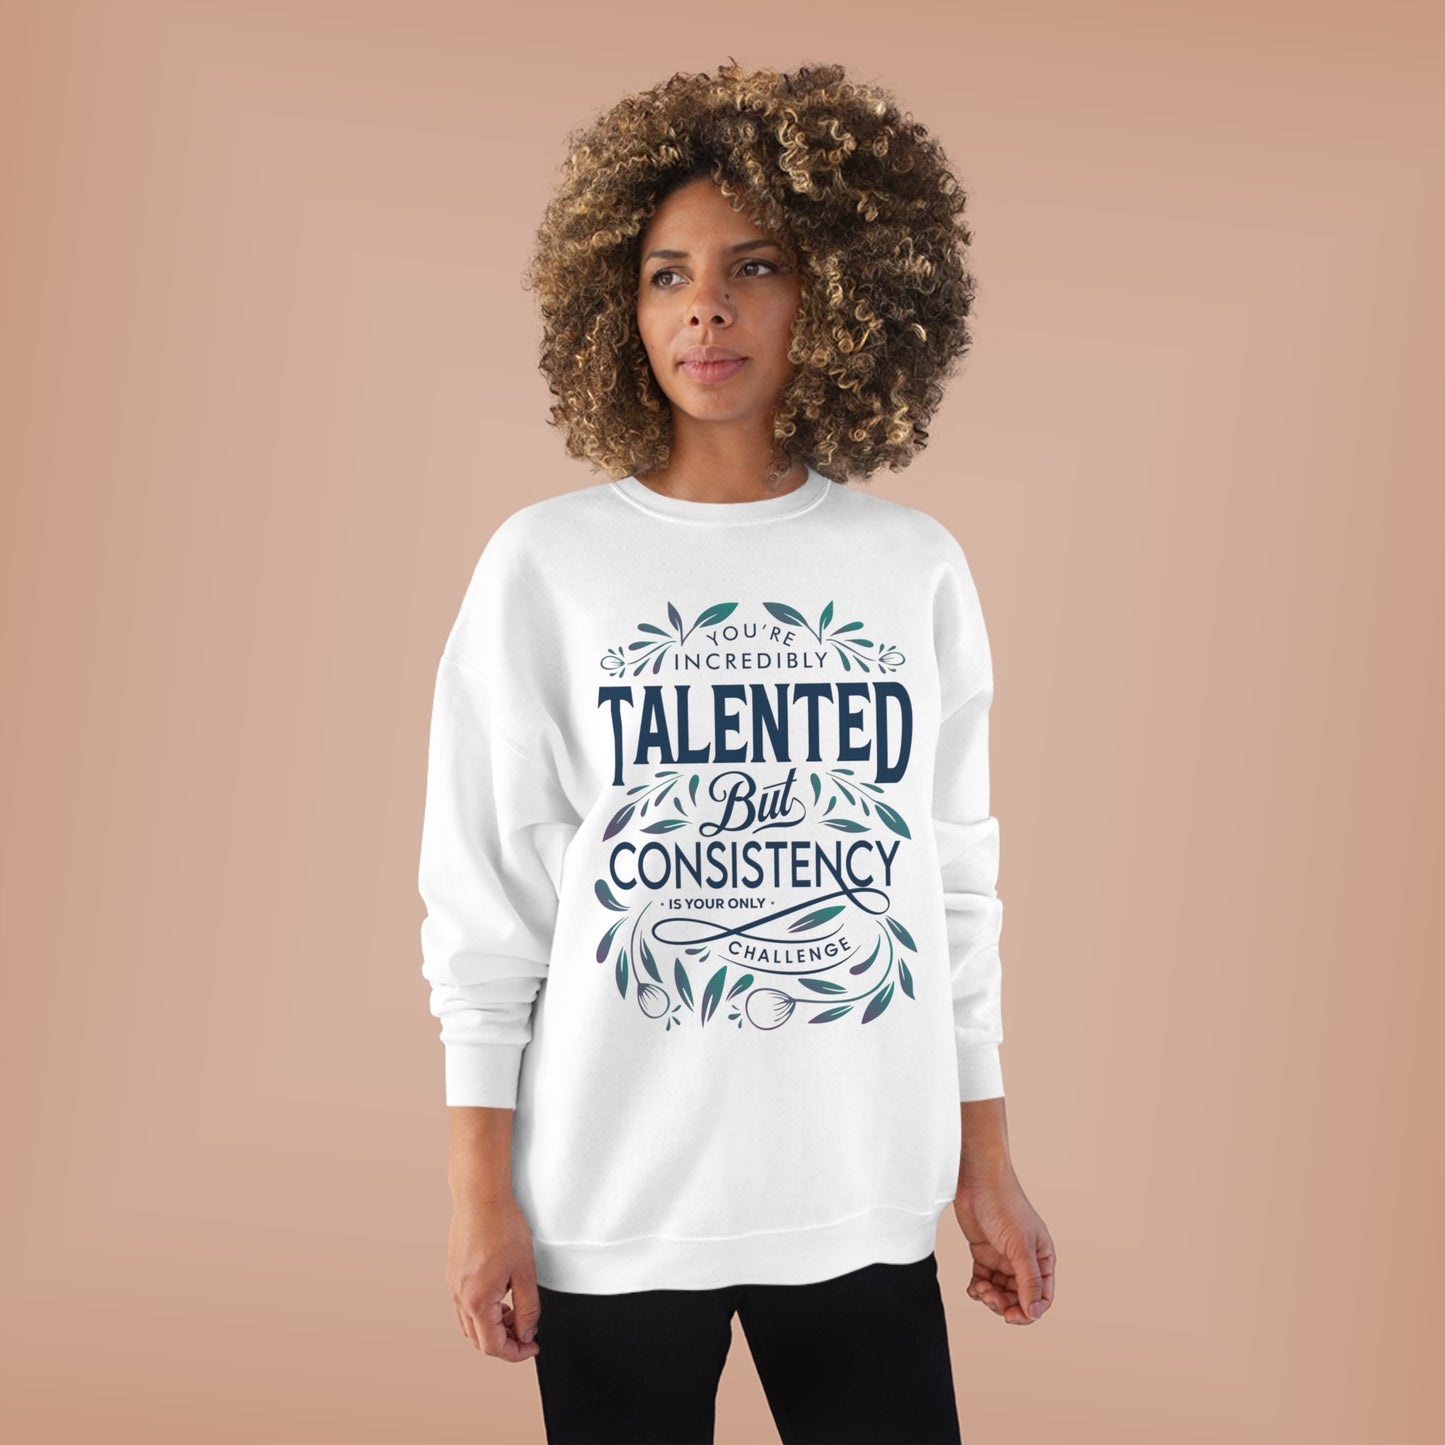 Talented Unisex EcoSmart® Crewneck Sweatshirt